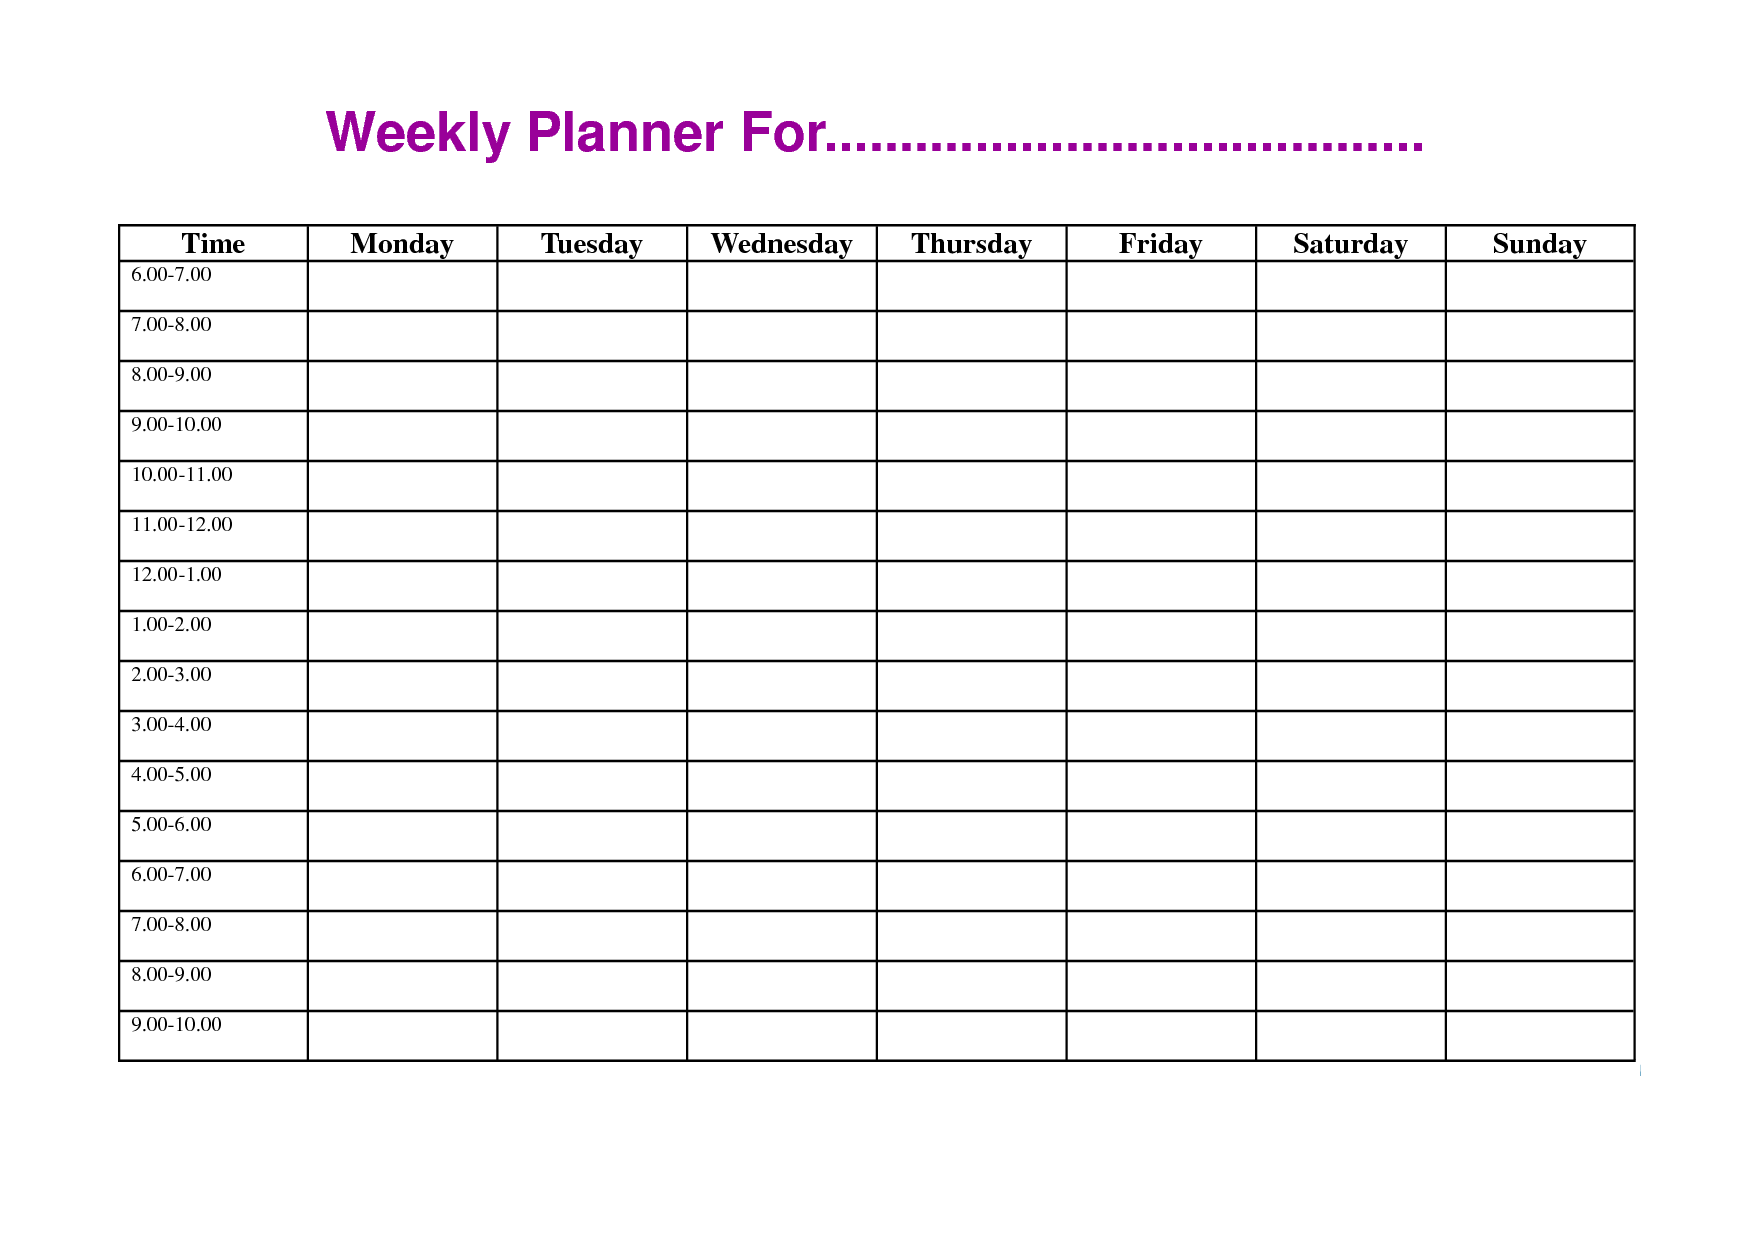 4 day work week schedule template